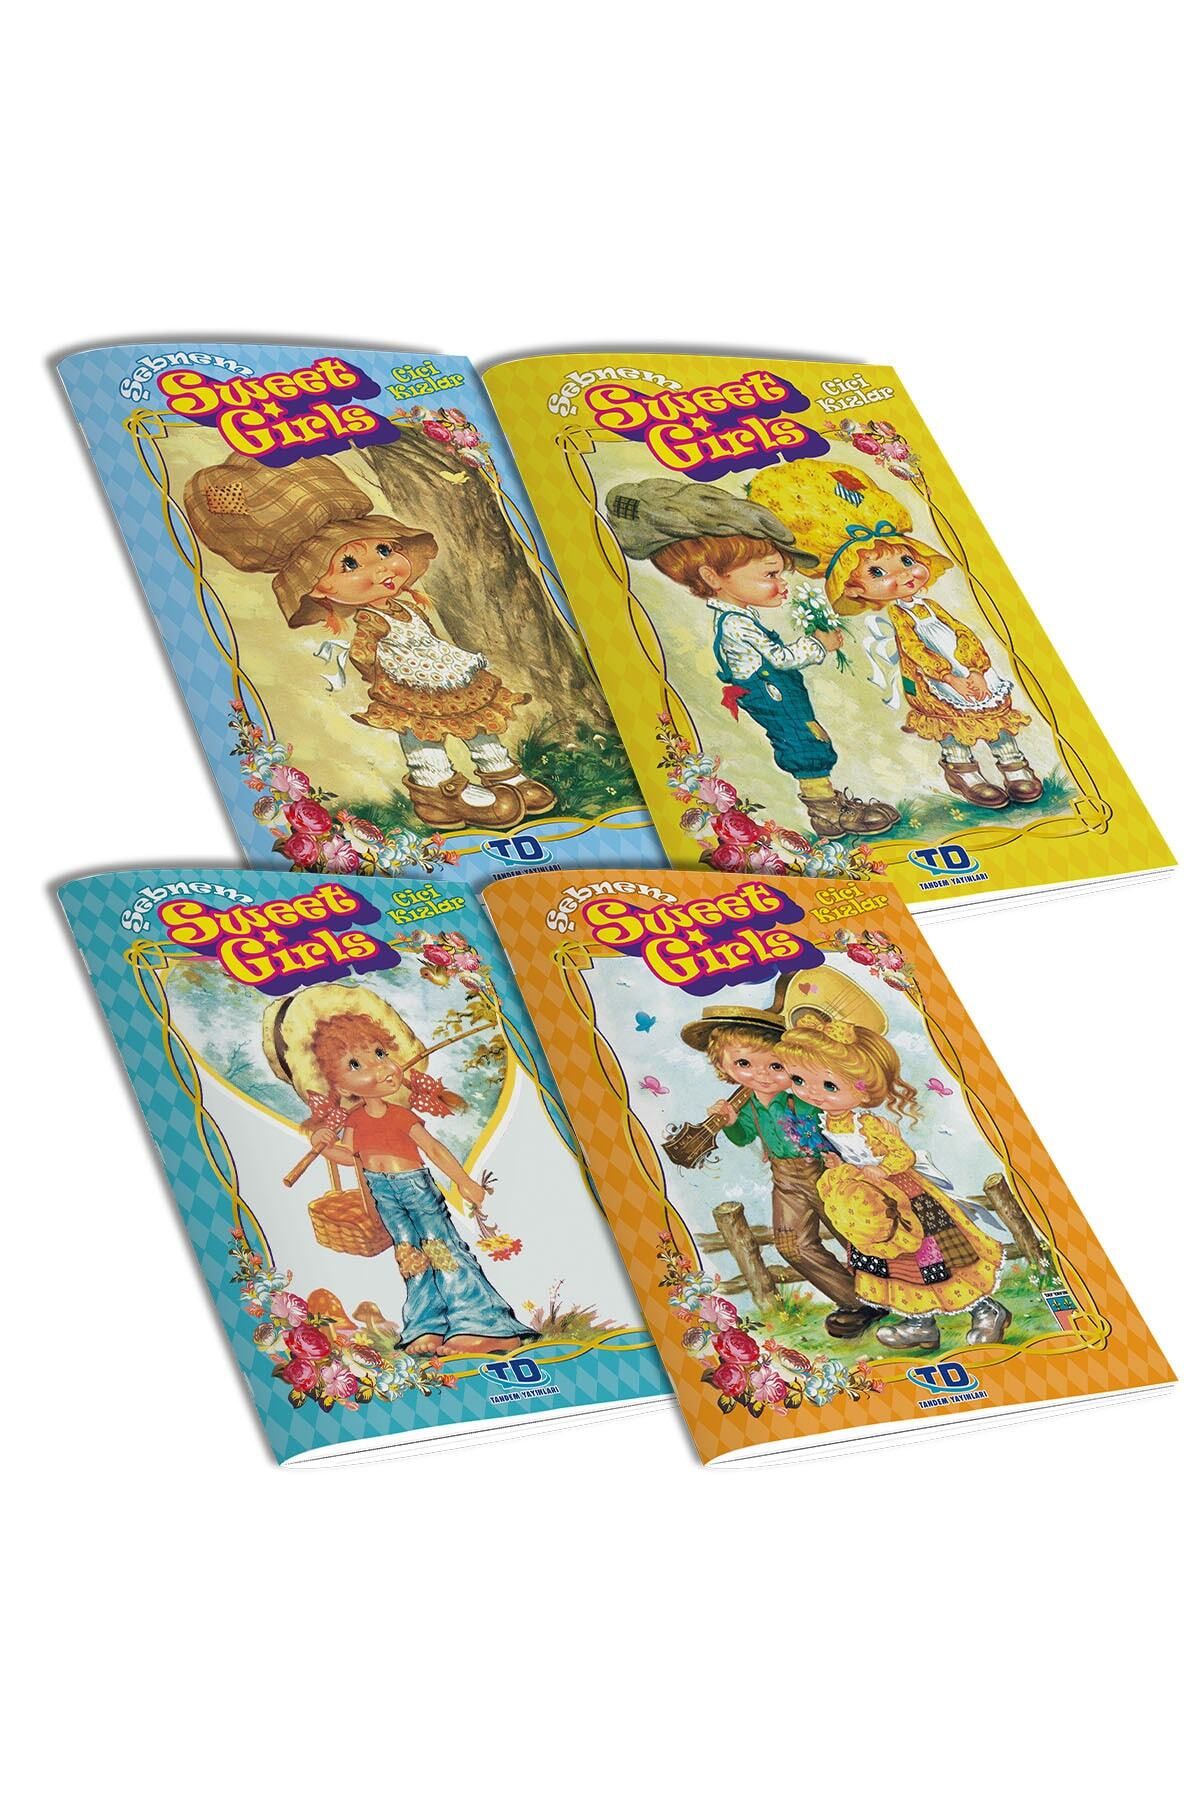 Tandem Yayınları Şebnem Cici Kızlar (Sweet Girls) 4 Lü Etkinlik Kitabı Seri 2